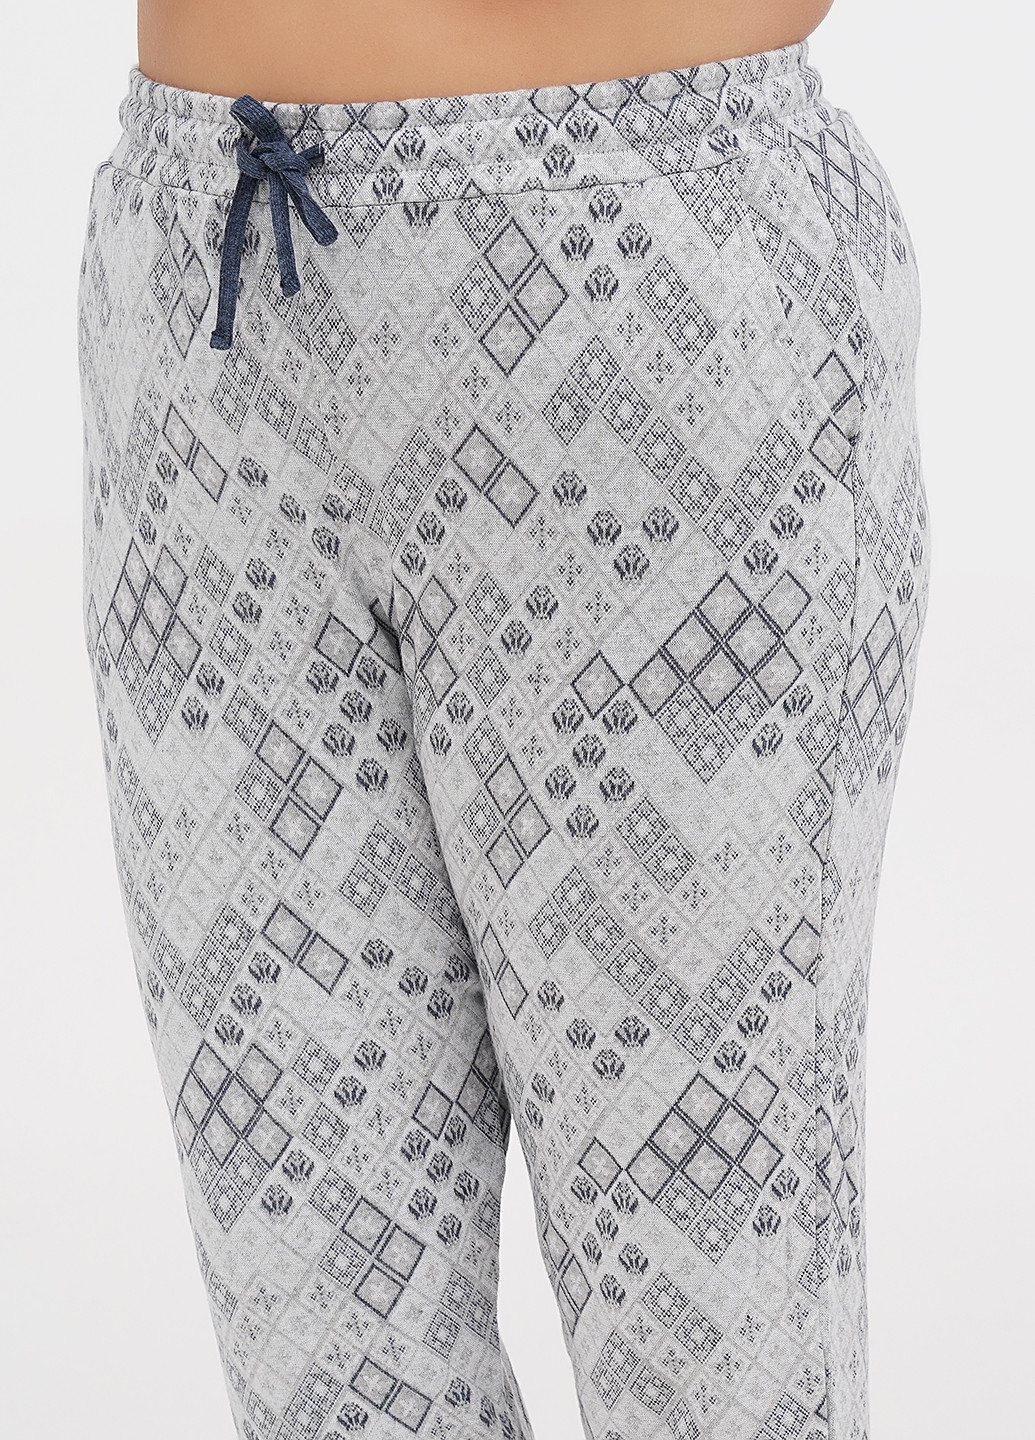 Комбинированная всесезон пижама (лонгслив, брюки) лонгслив + брюки Cotpark